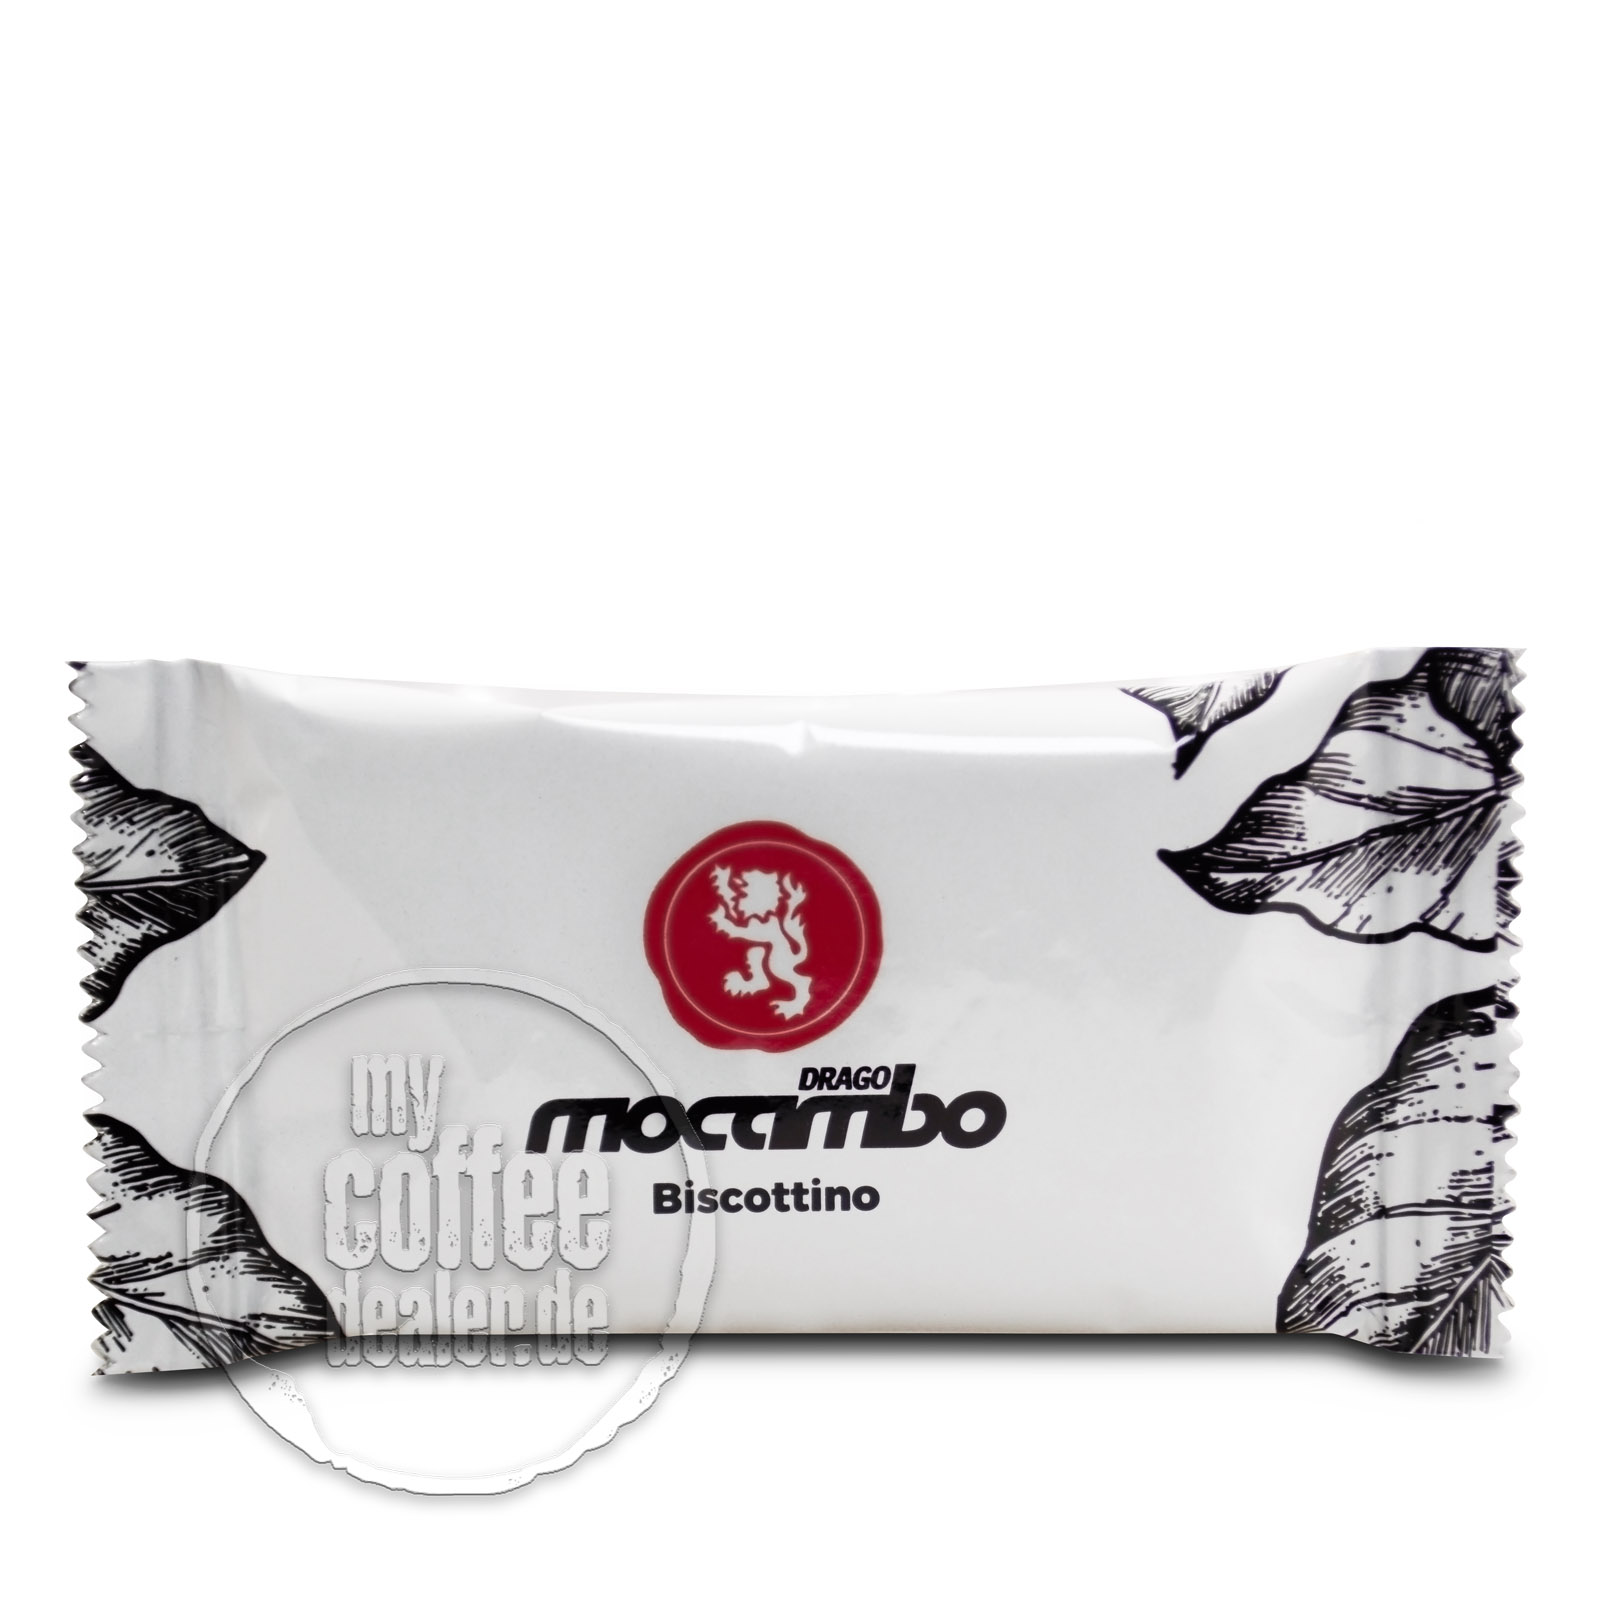 Mocambo Vanillegebäck ca. 200 Stück á 5.6g